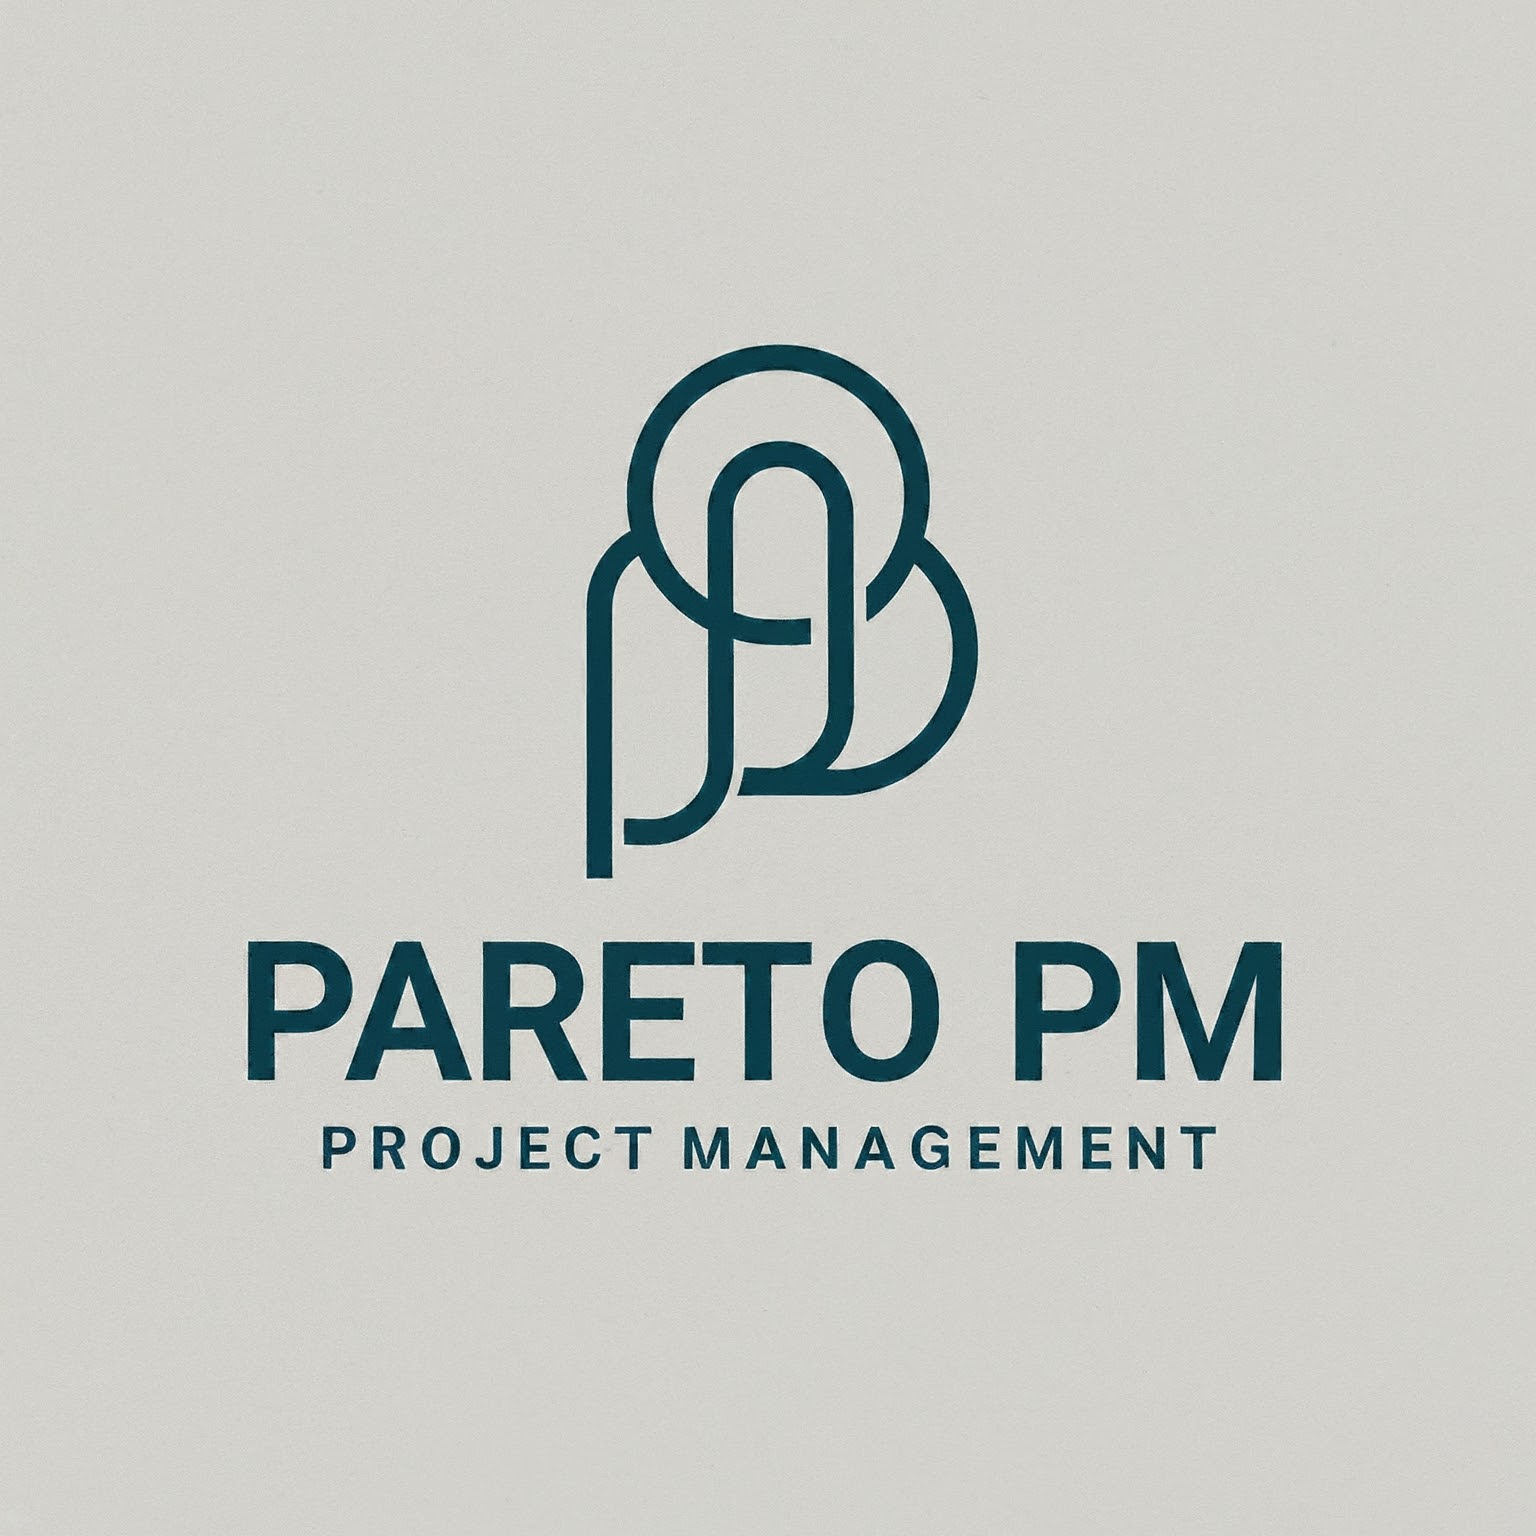 Pareto PM